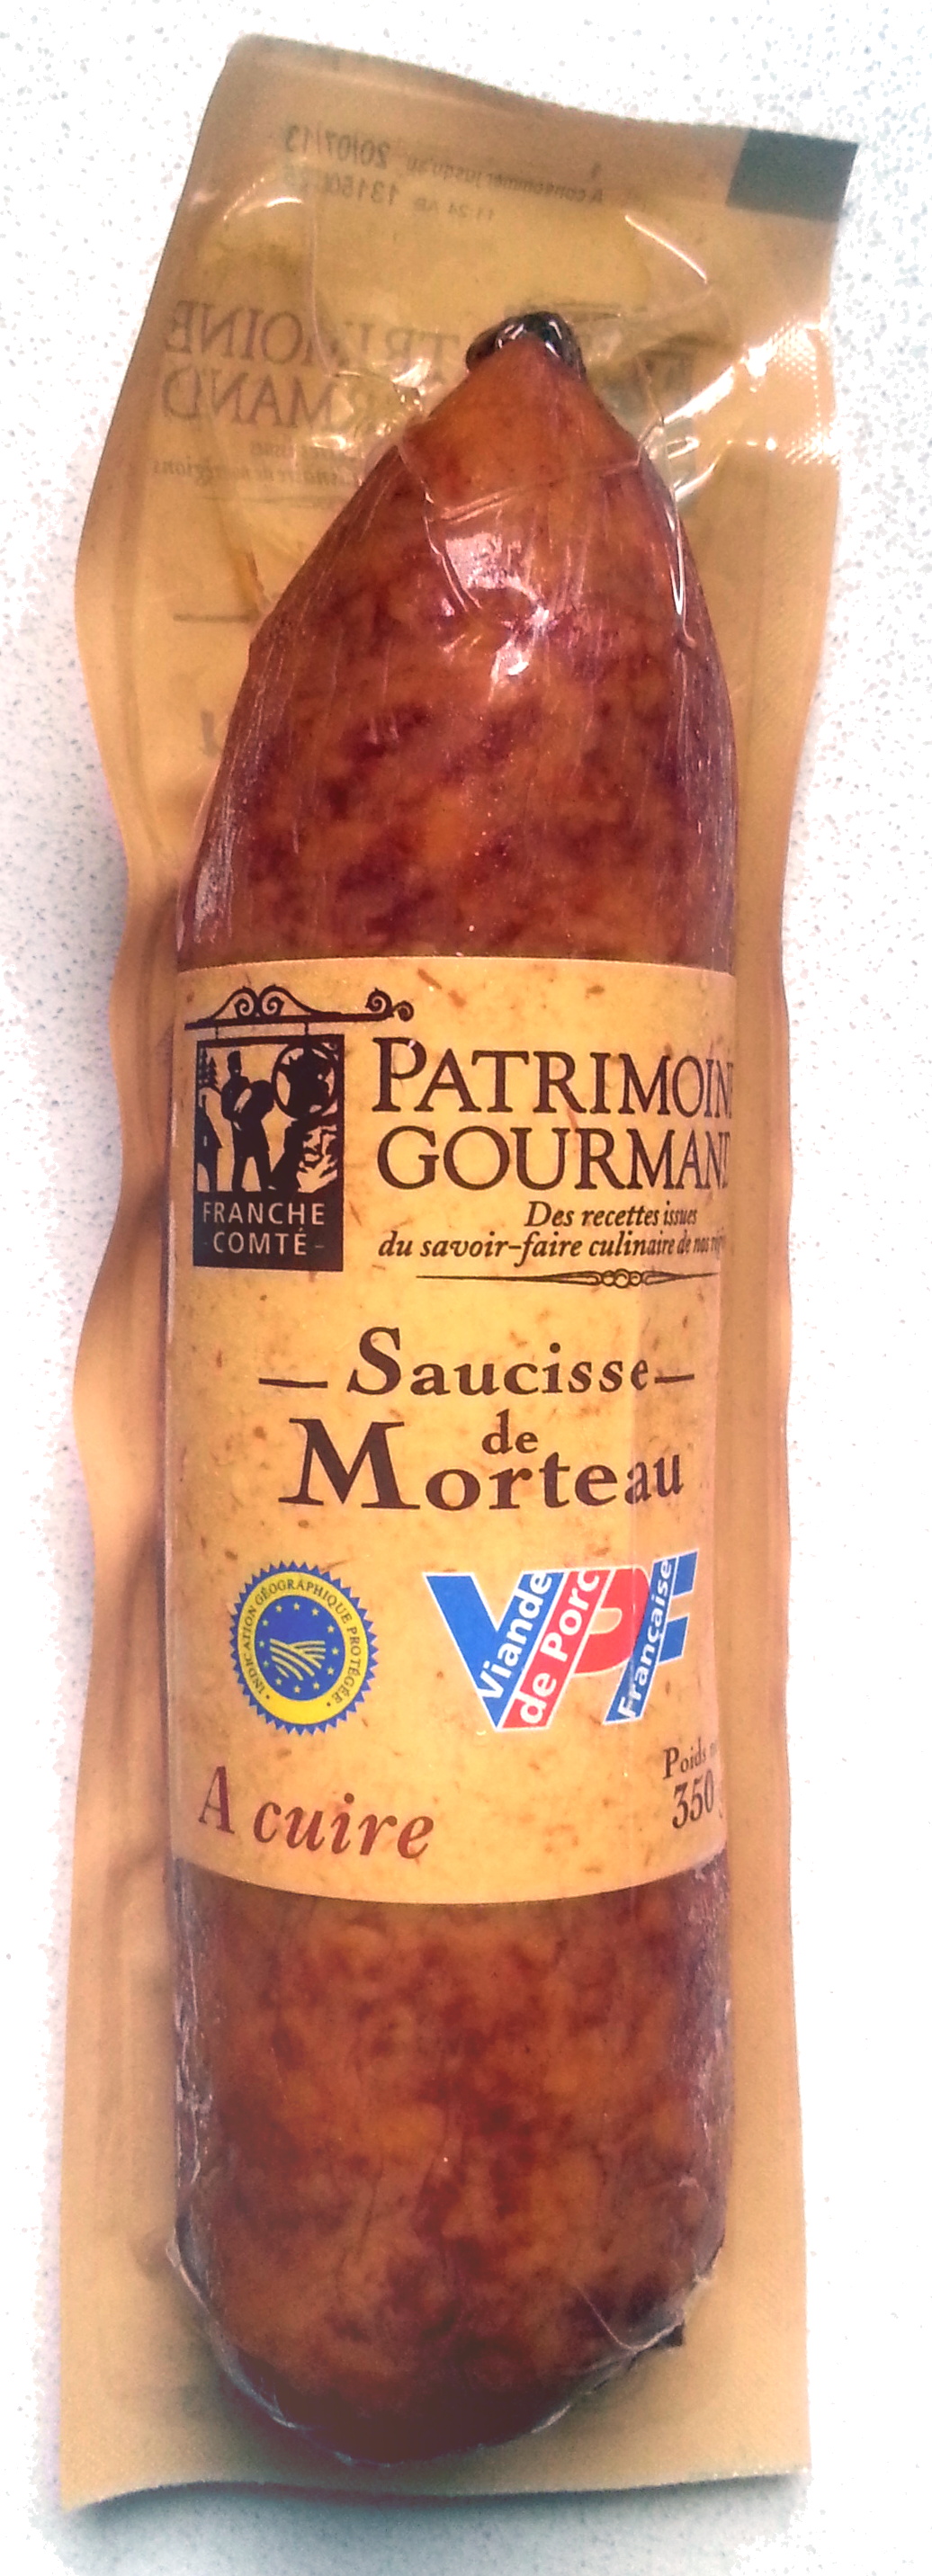 Saucisse de Morteau - Product - fr